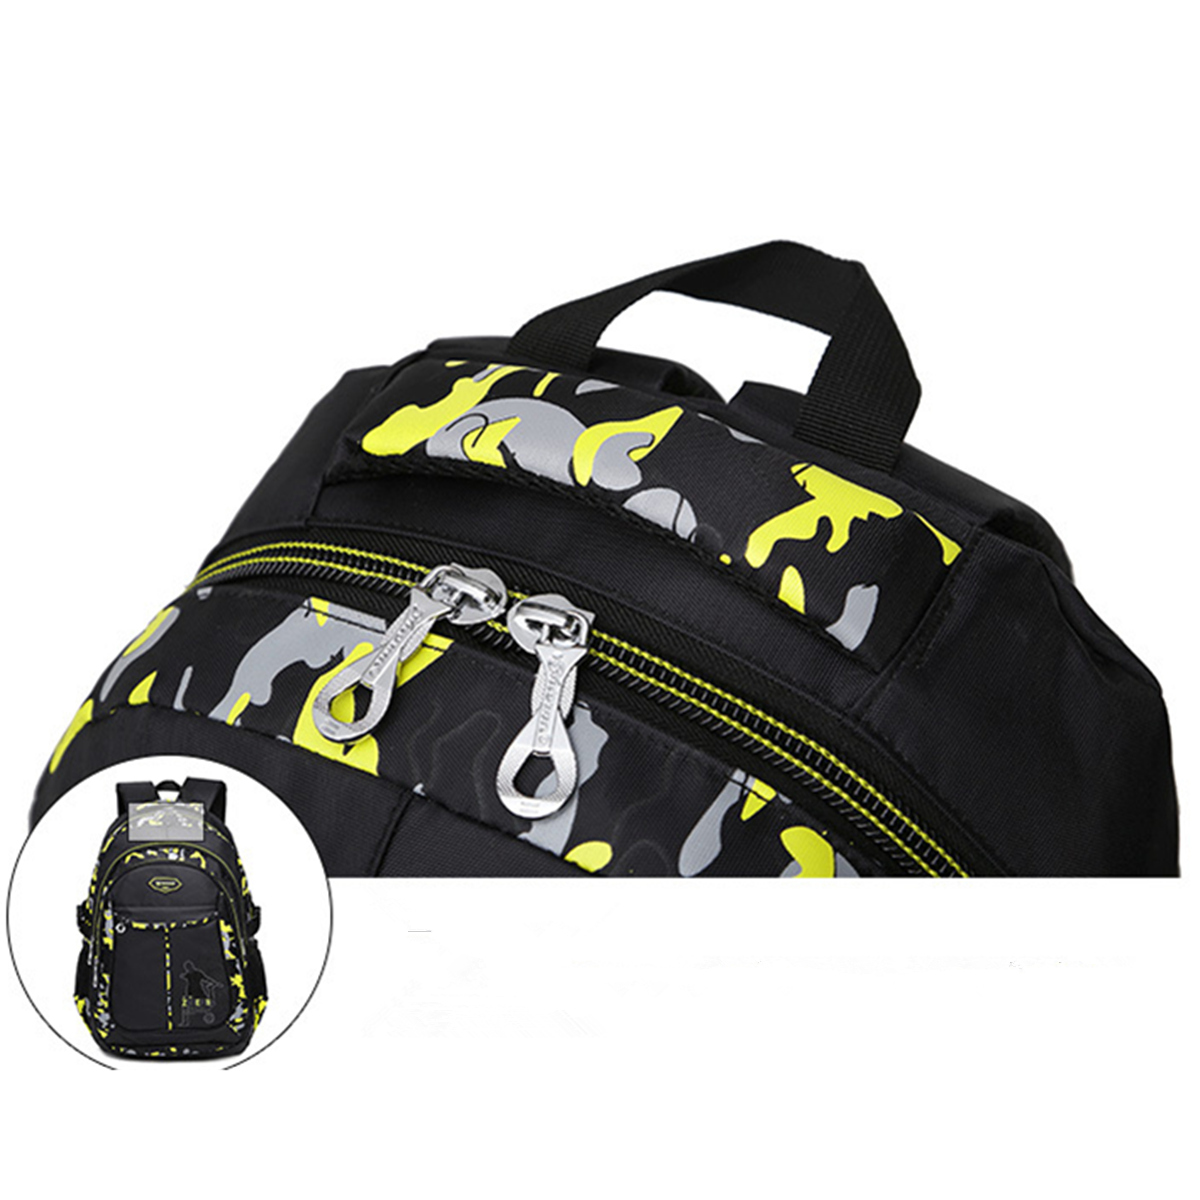 Men-Waterproof-Big-Capacity-Travel-Outdoor-Laptop-Shoulders-Bag-School-Backpack-1188252-10